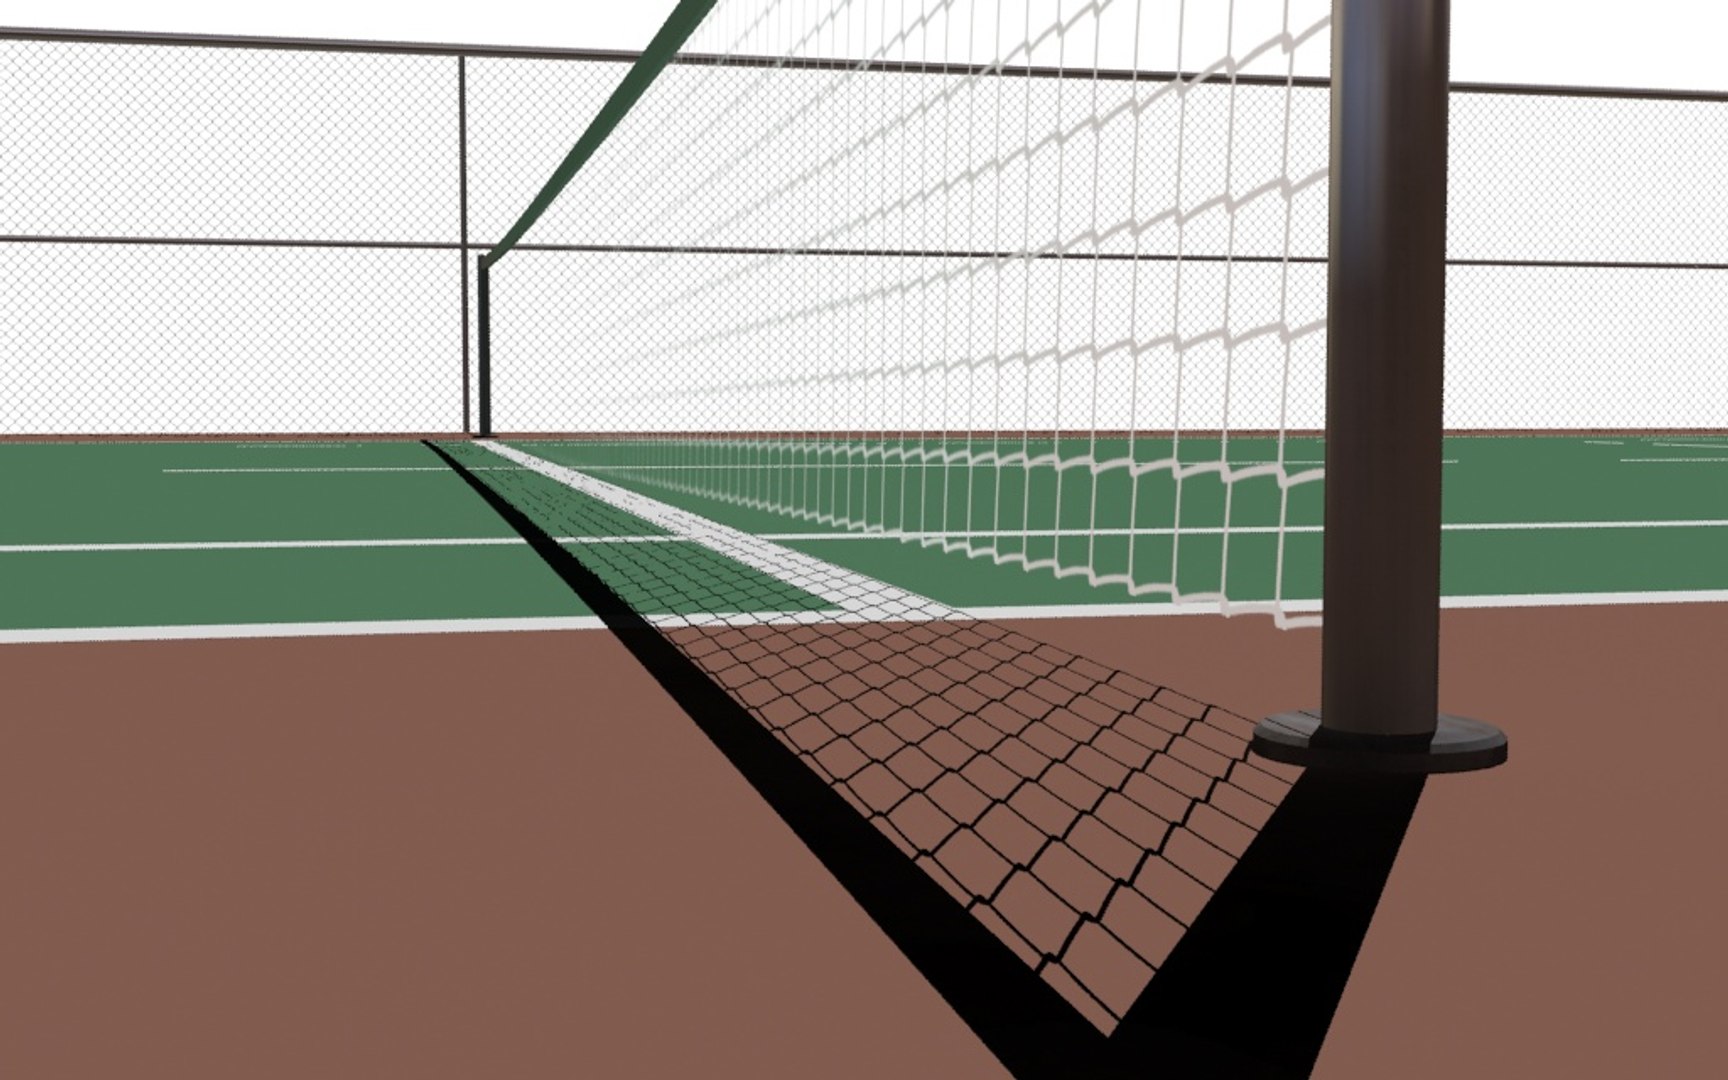 3d Tennis Court Model